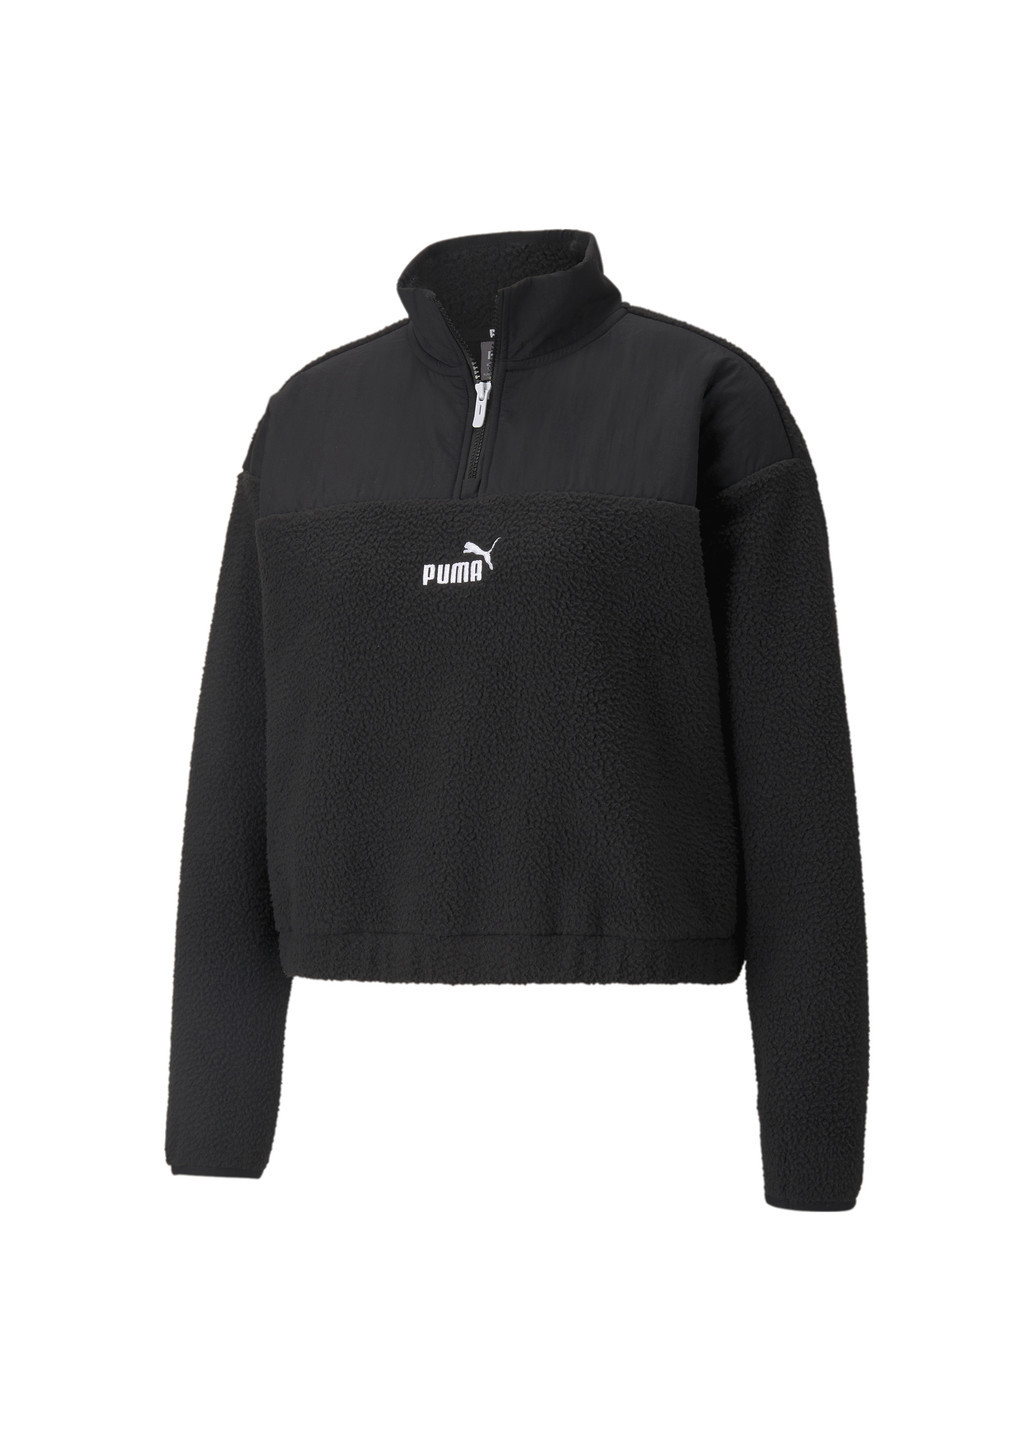 Толстовка Power Half-Zip Women's Sweatshirt Puma однотонная чёрная спортивная нейлон, полиэстер